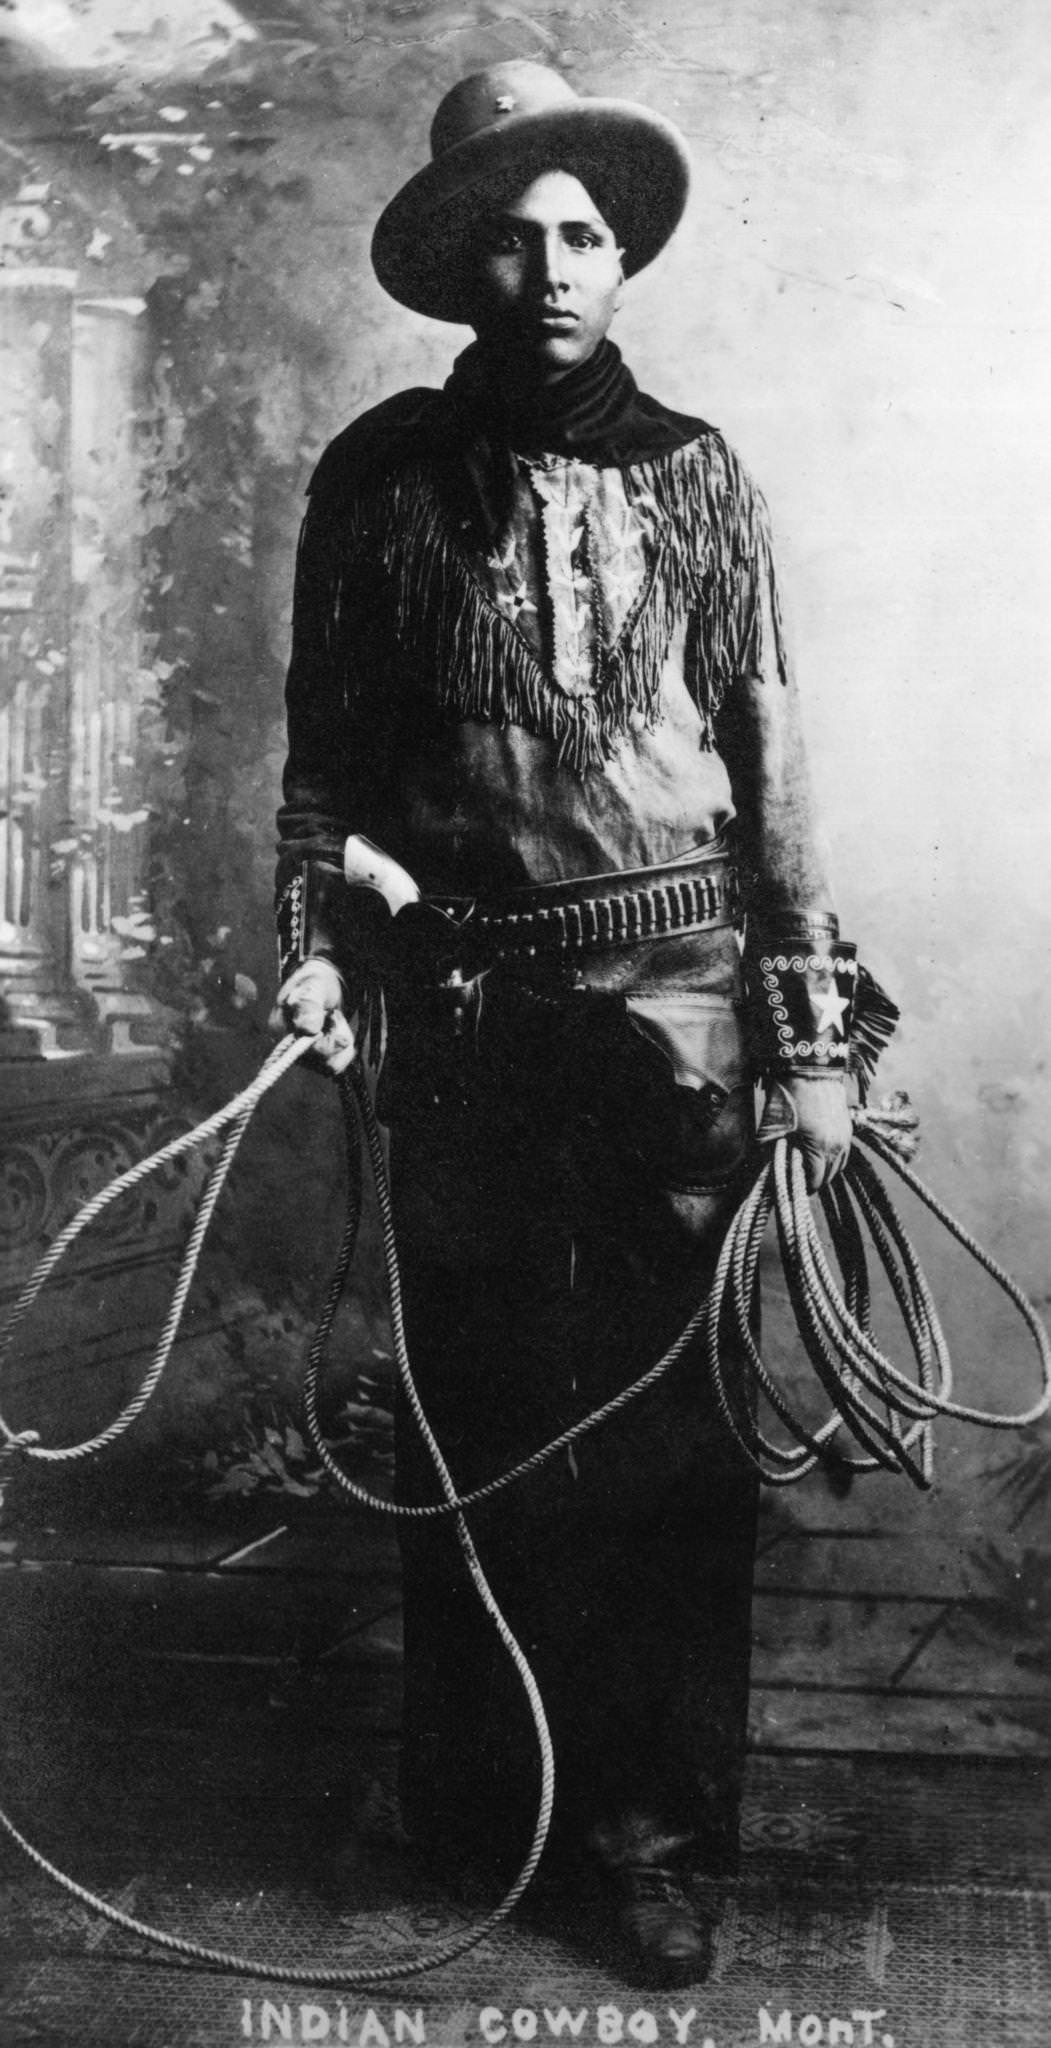 Montana Cowboy, circa 1850, a native American cowboy in Montana.